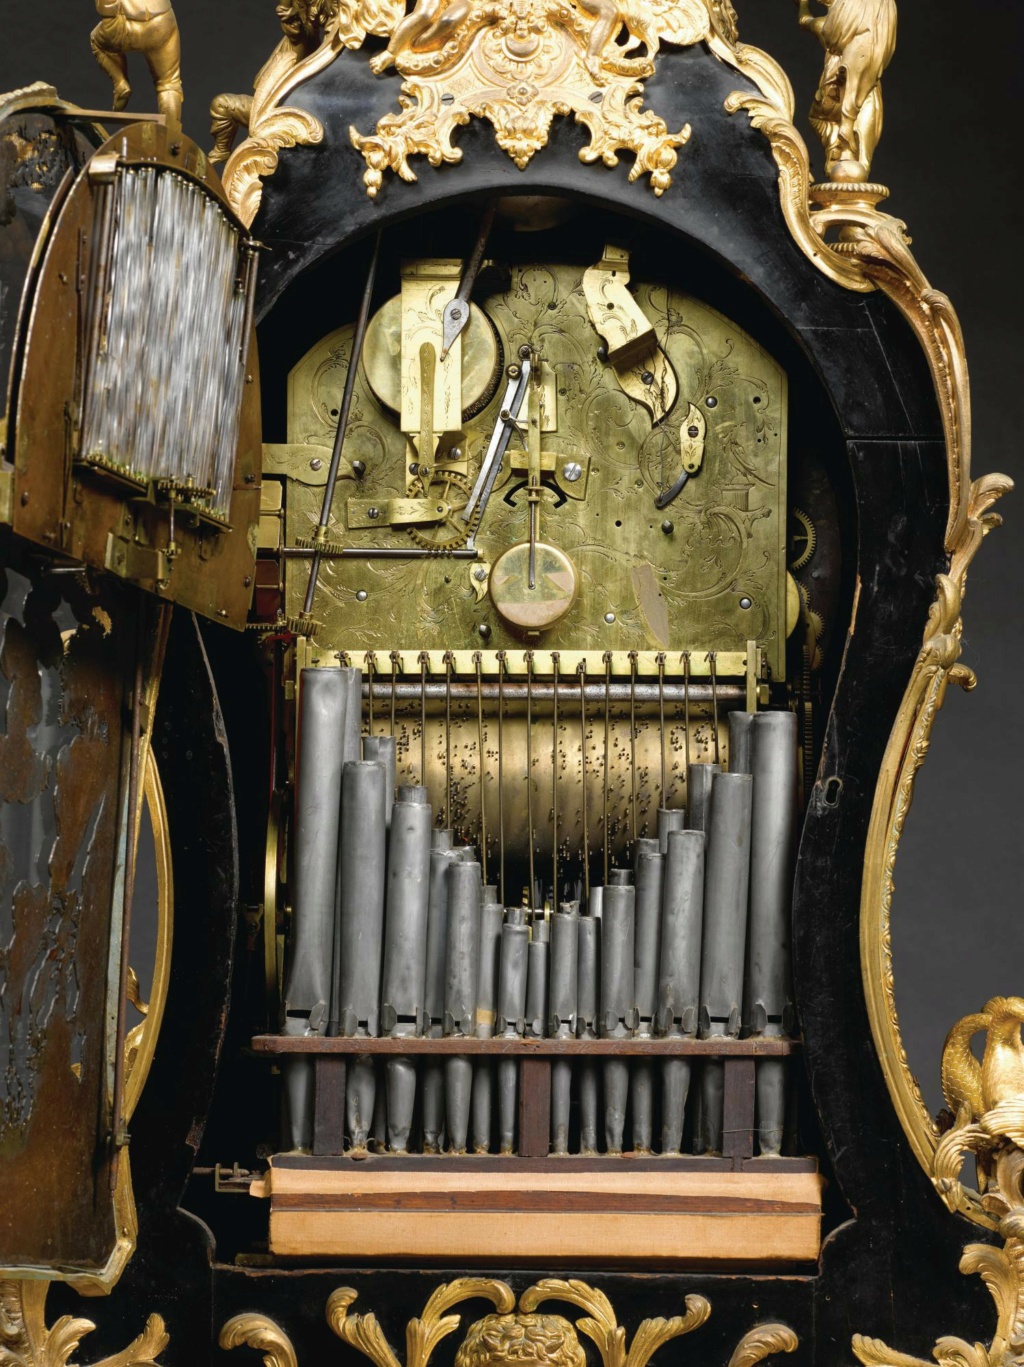 Horloges et pendules du XVIIIe siècle - Page 4 L2030313